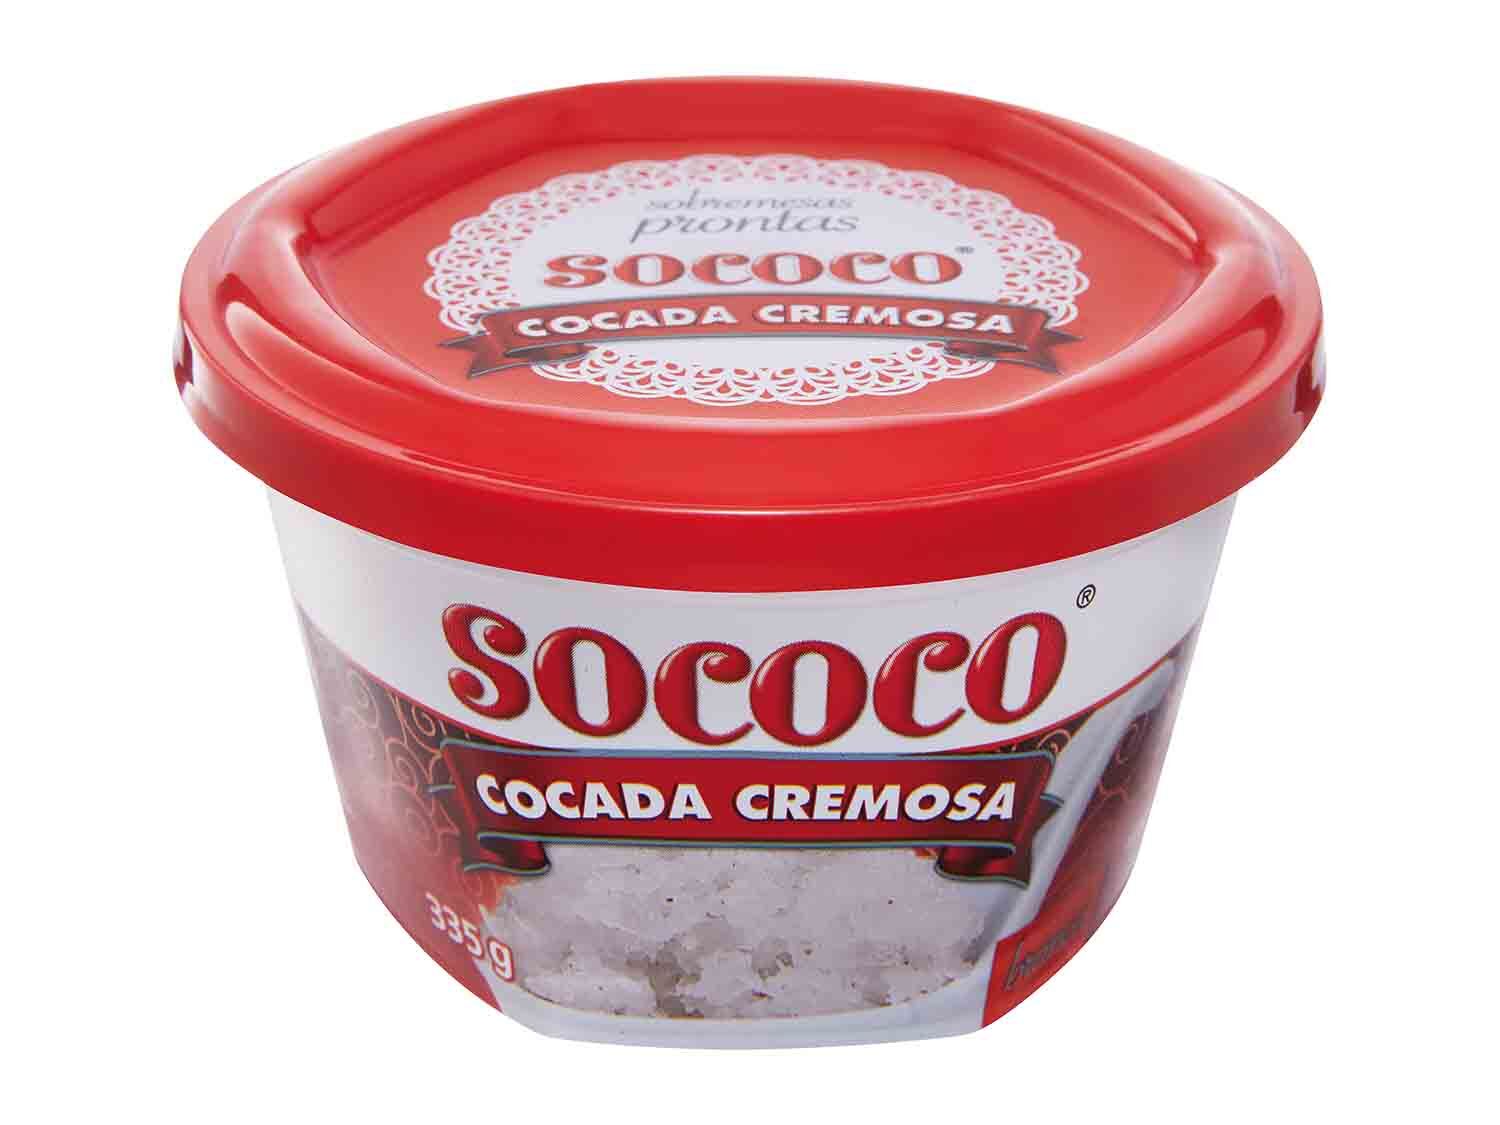 Sococo® Cocada cremosa